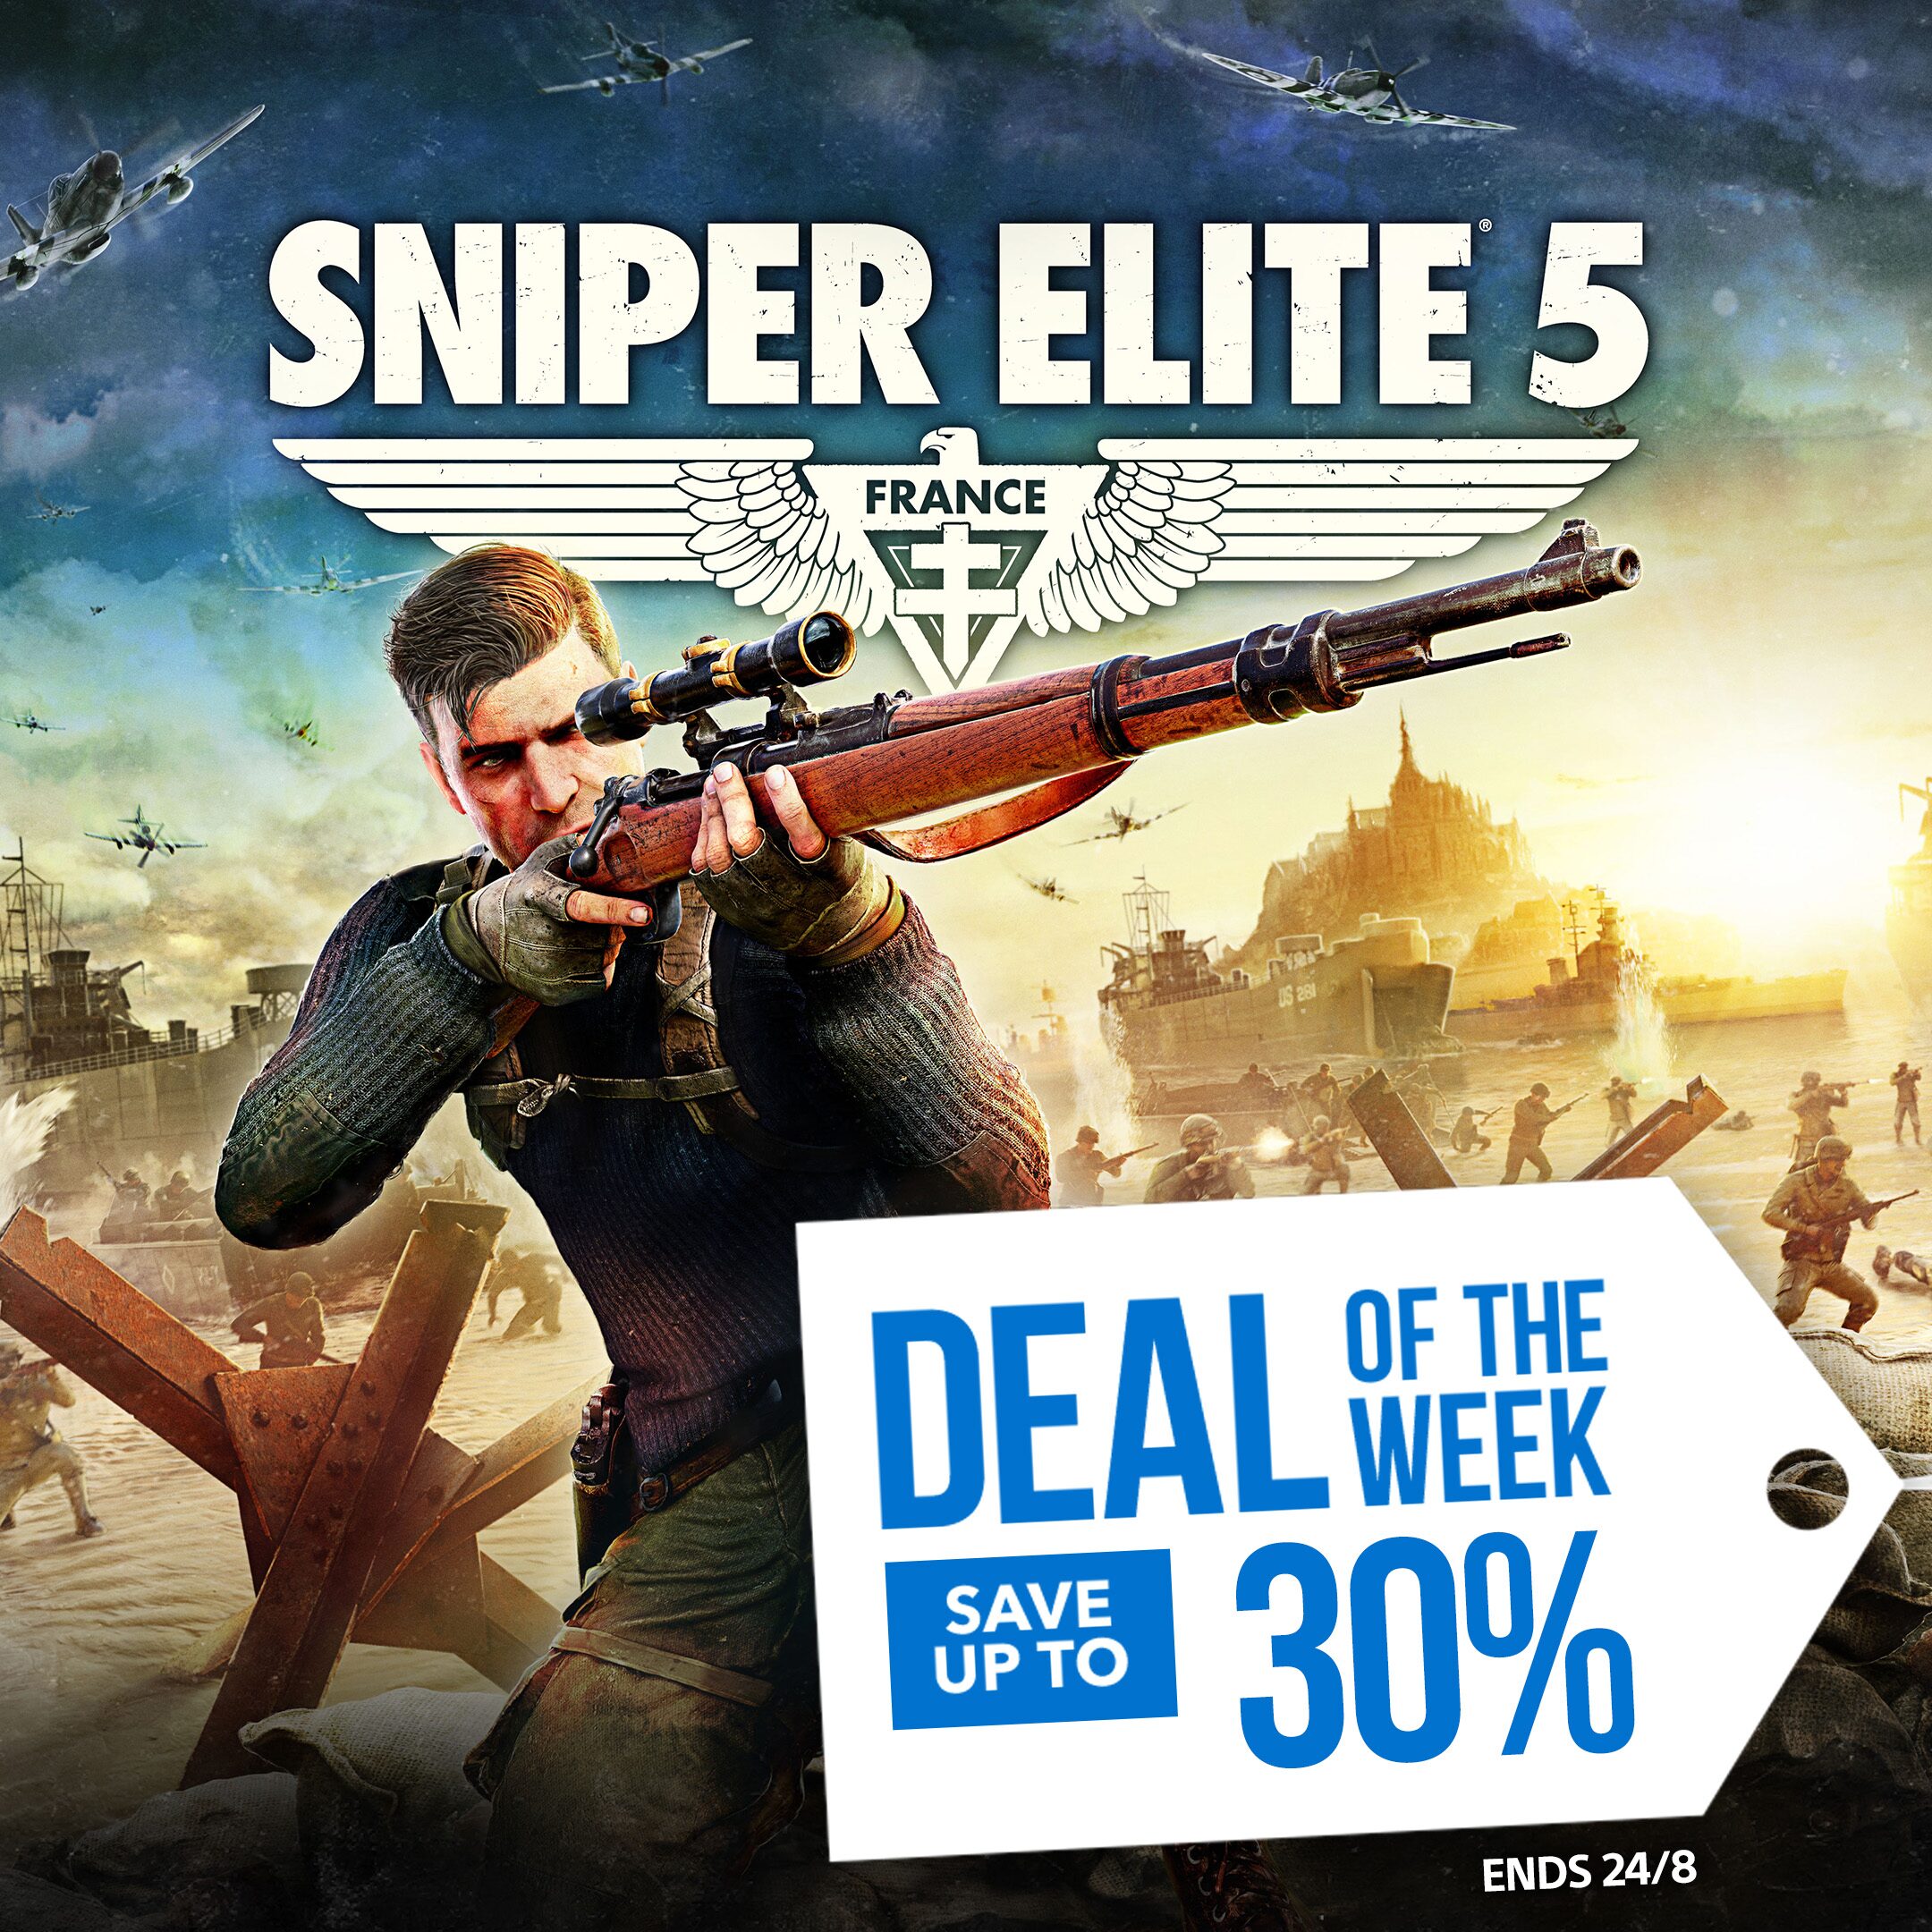 [PROMO] Deal of the Week - Sniper Elite 5 - TD